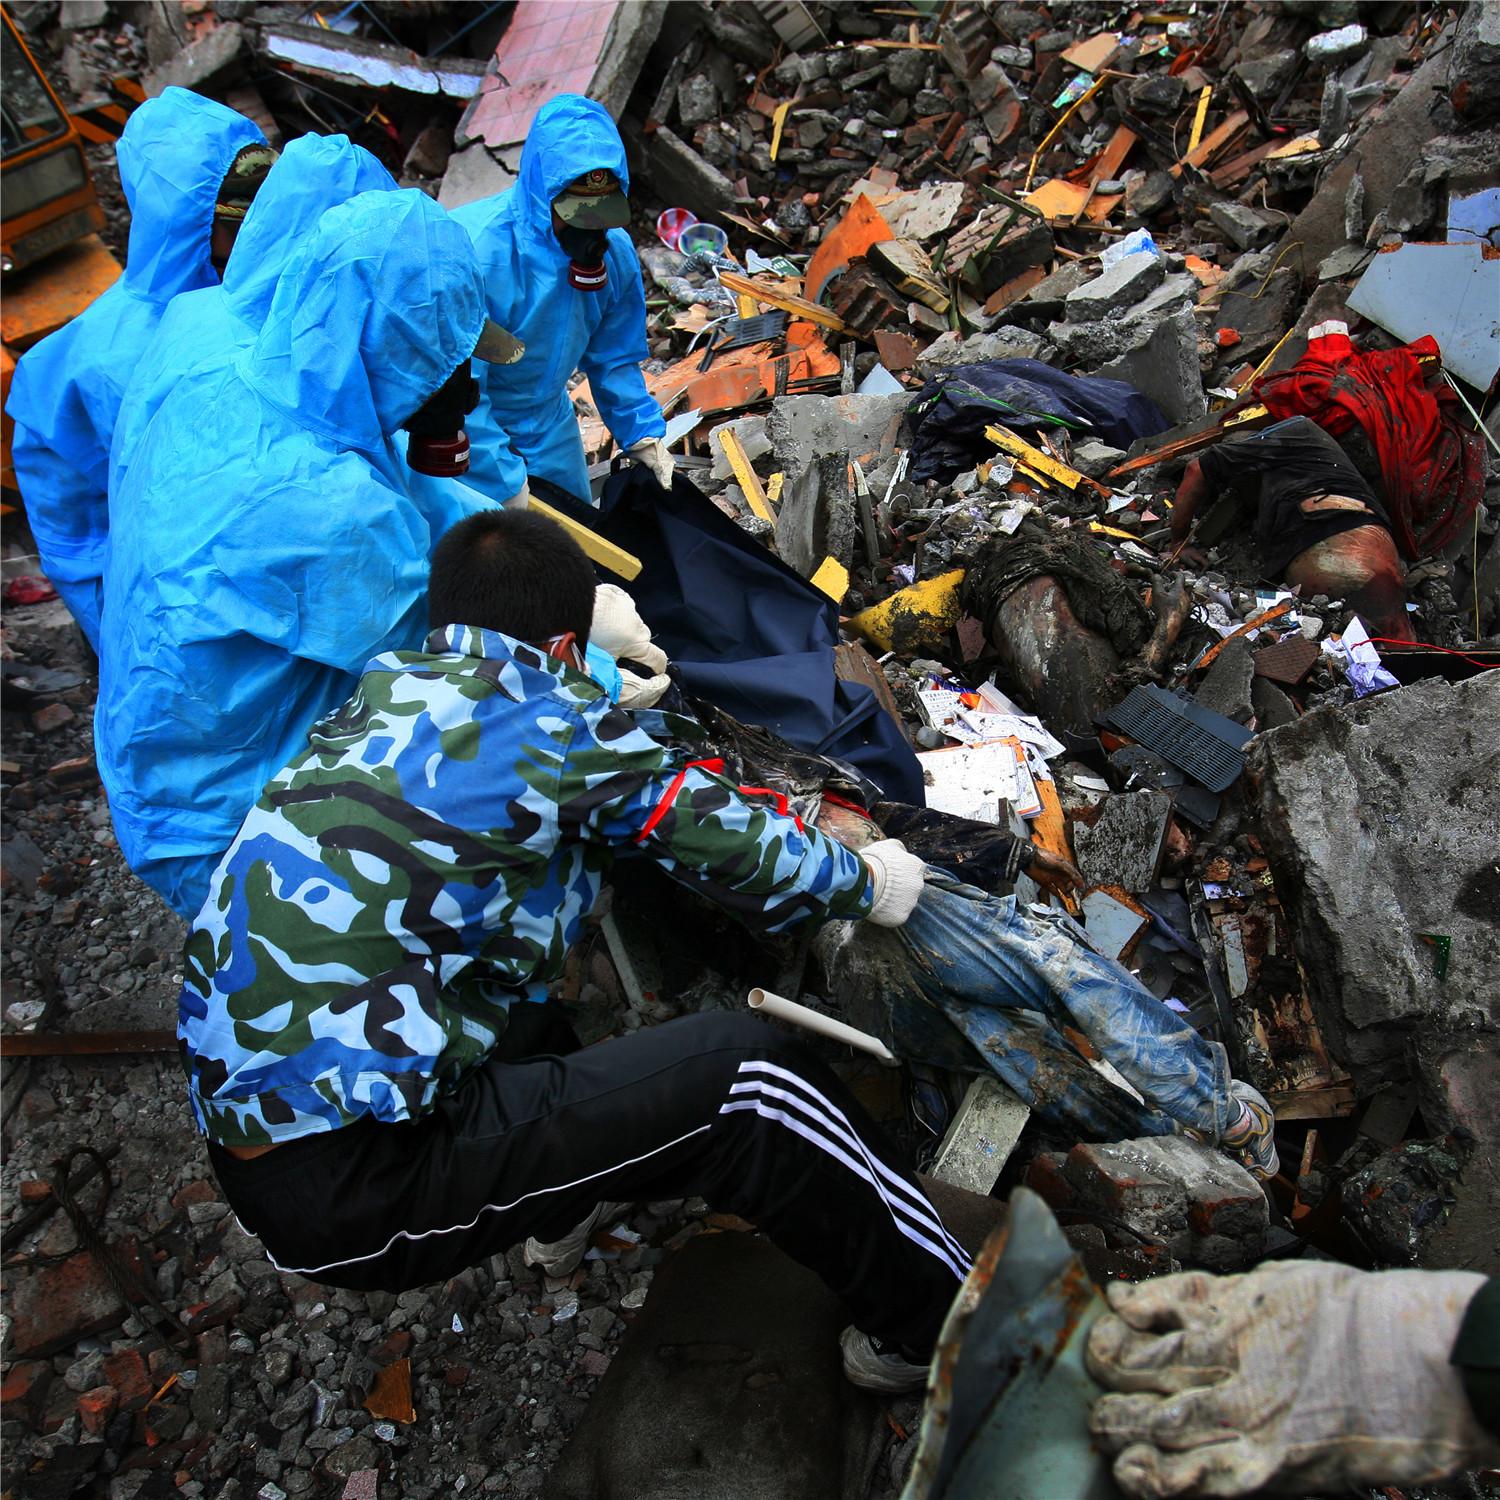 亲历汶川地震救灾摄影师公开采访手记,大量灾区照片首曝